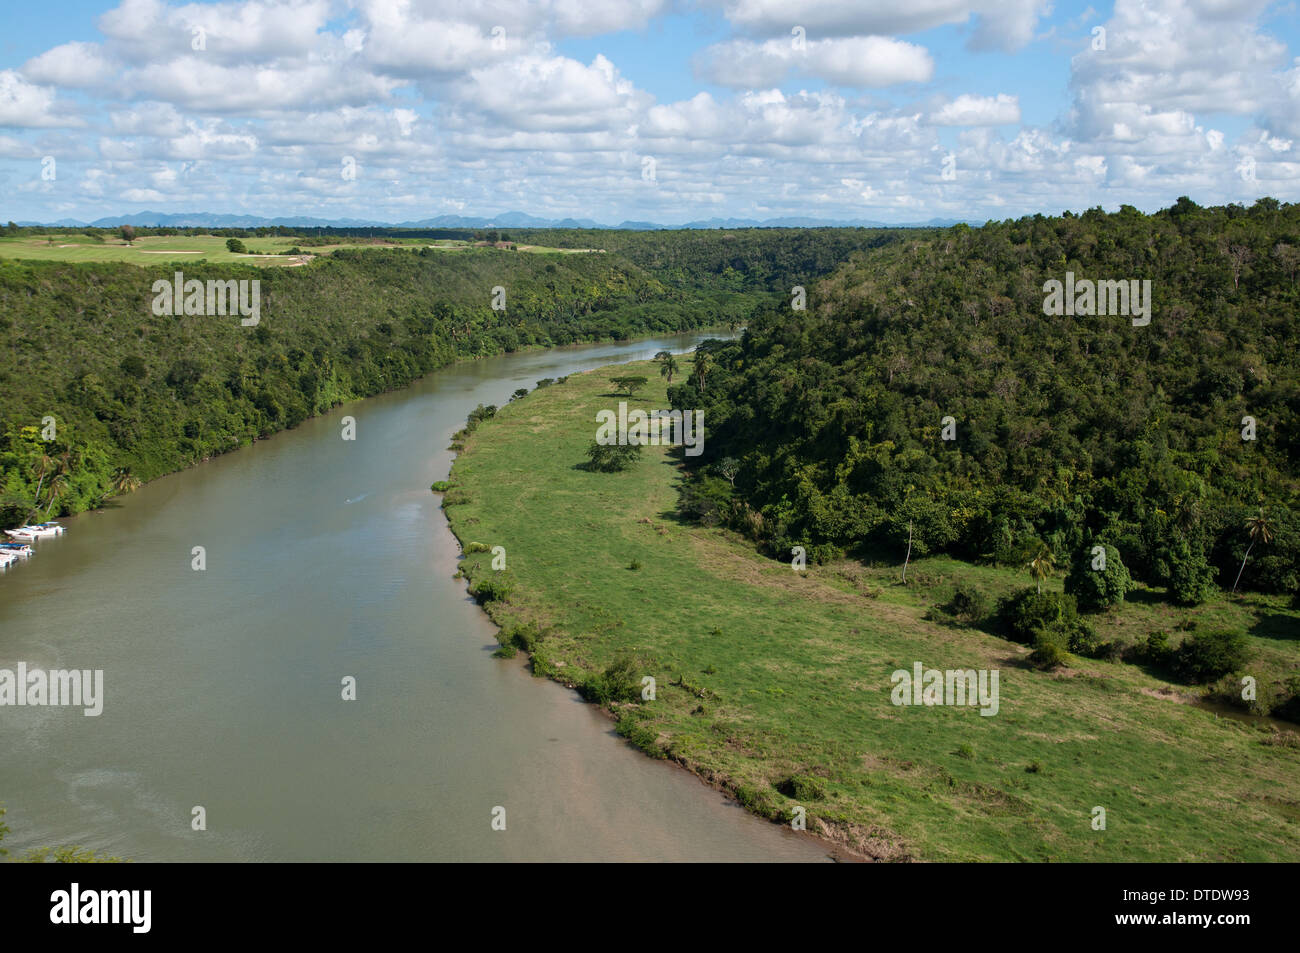 Chavon river. Republica Dominicana Stock Photo